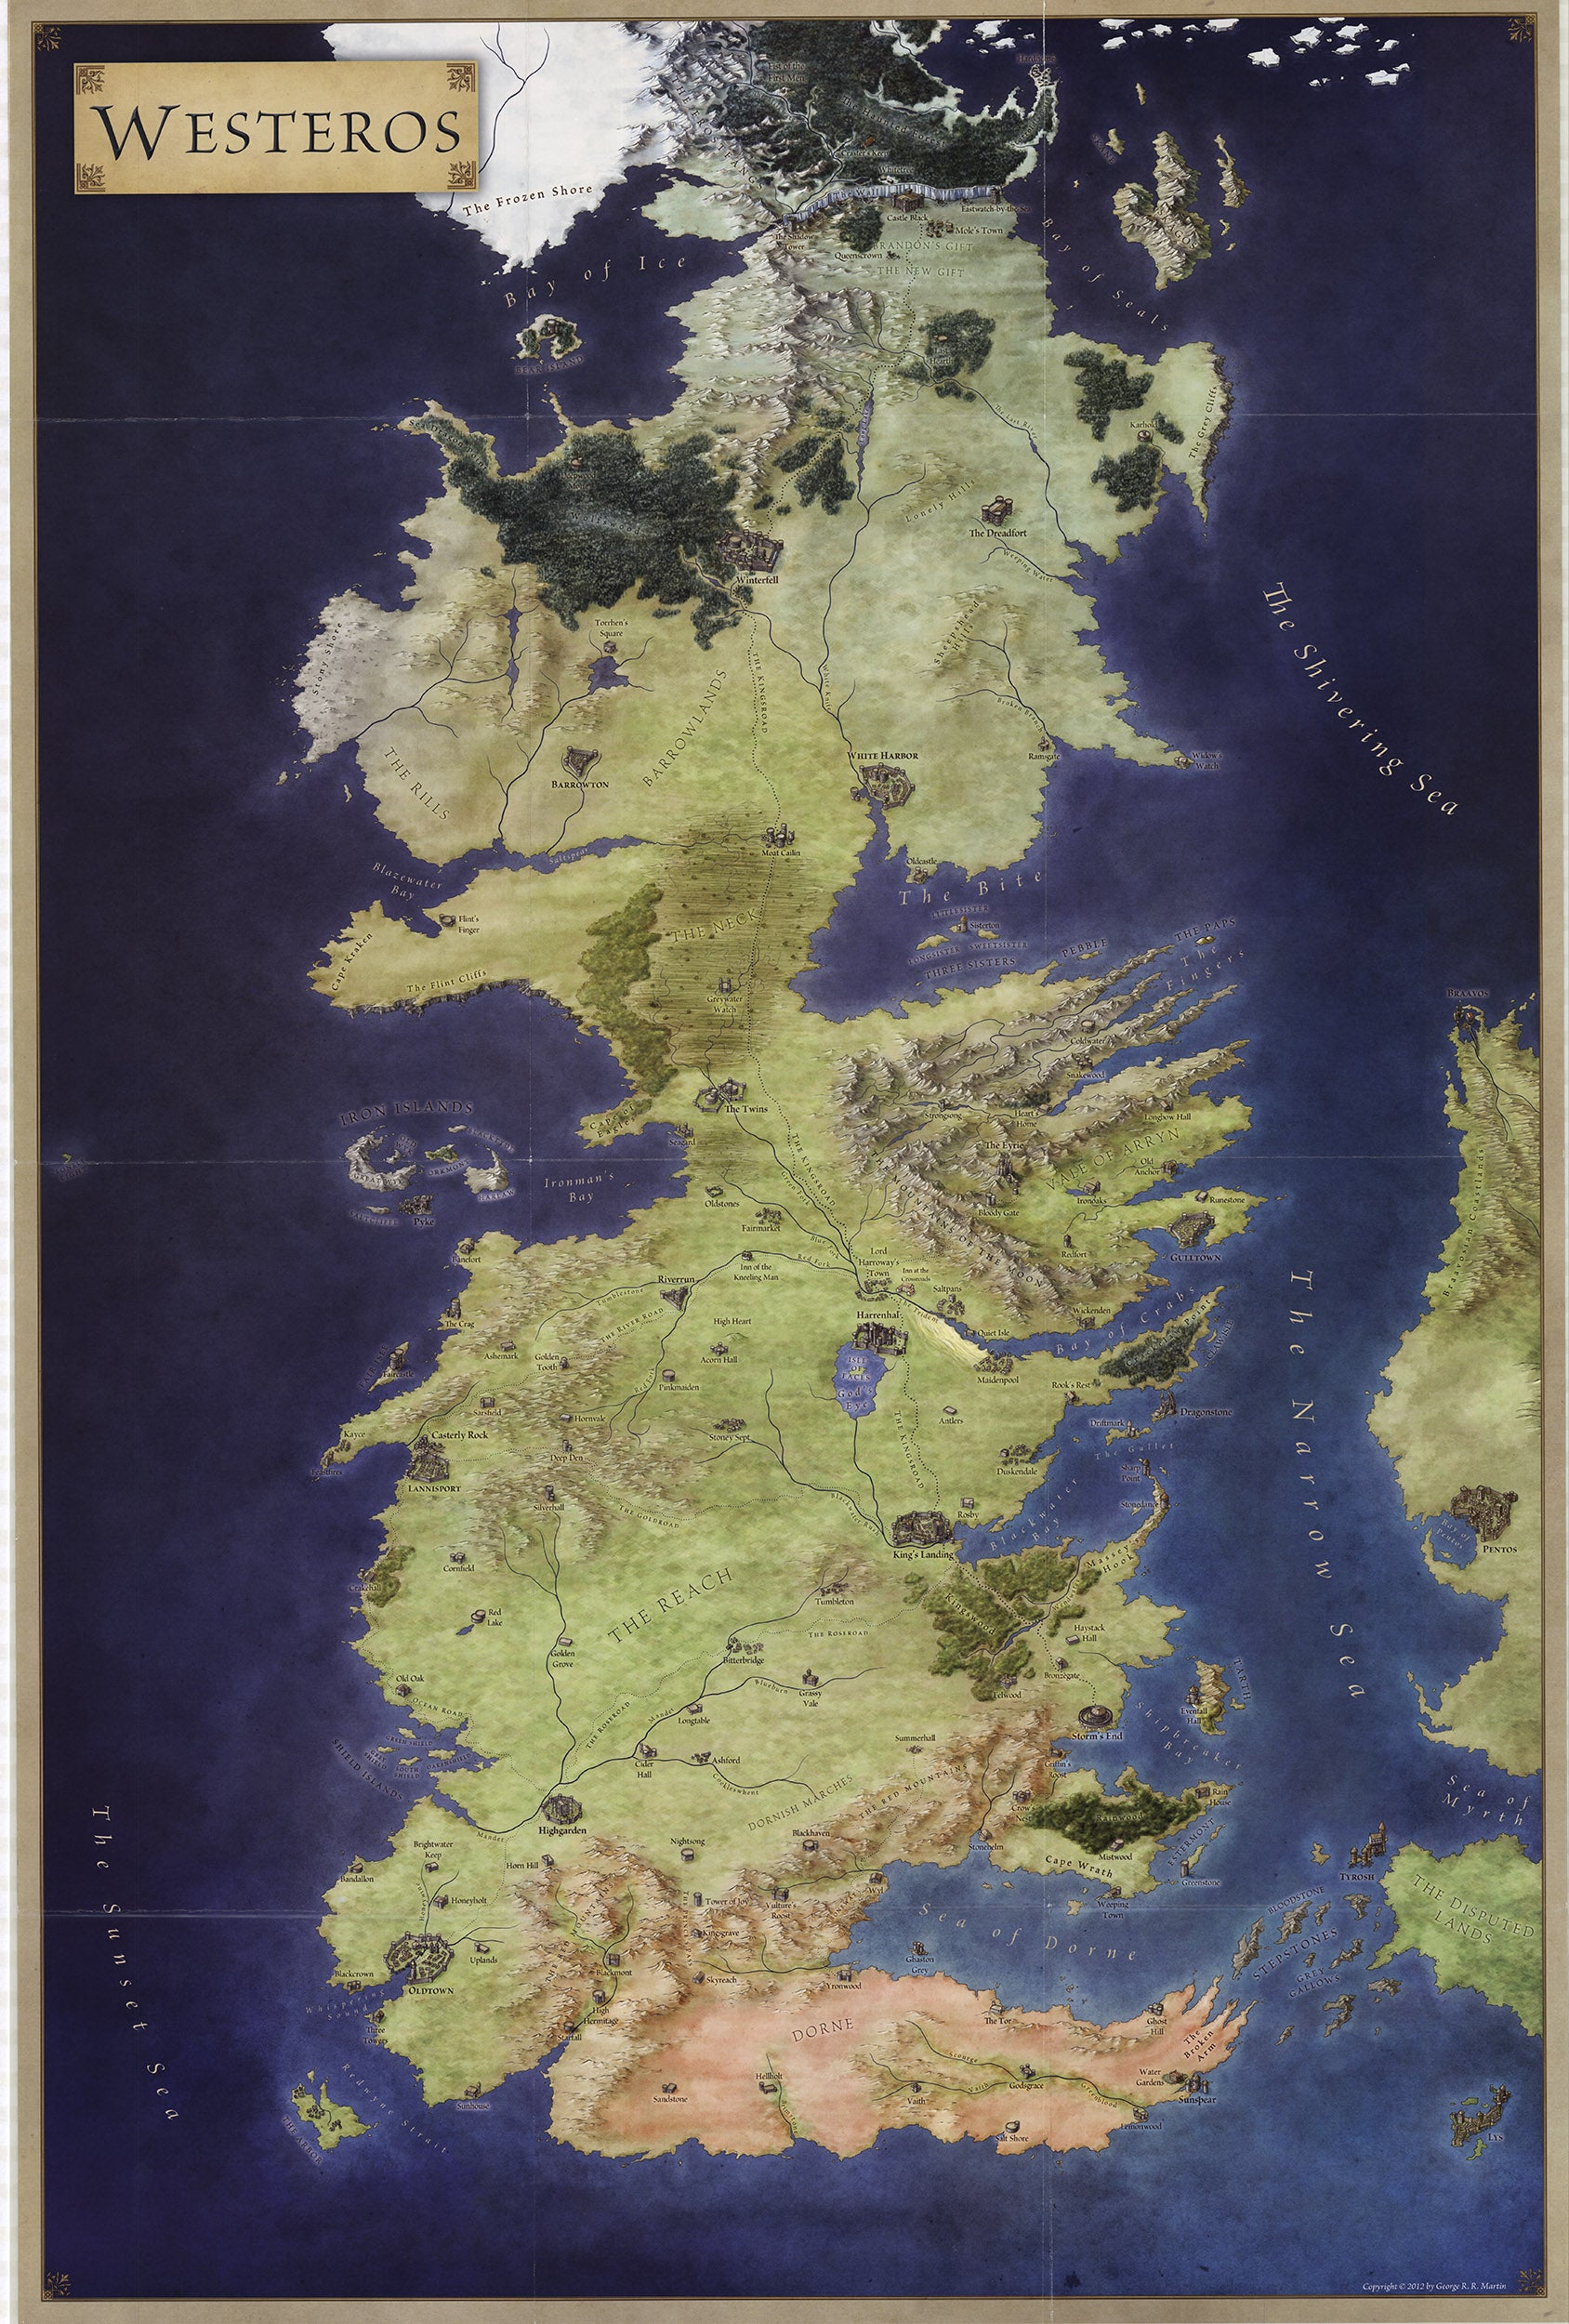 Westeros haritası Game of Thrones serisine eşlik edecek şekilde geliştirildi.